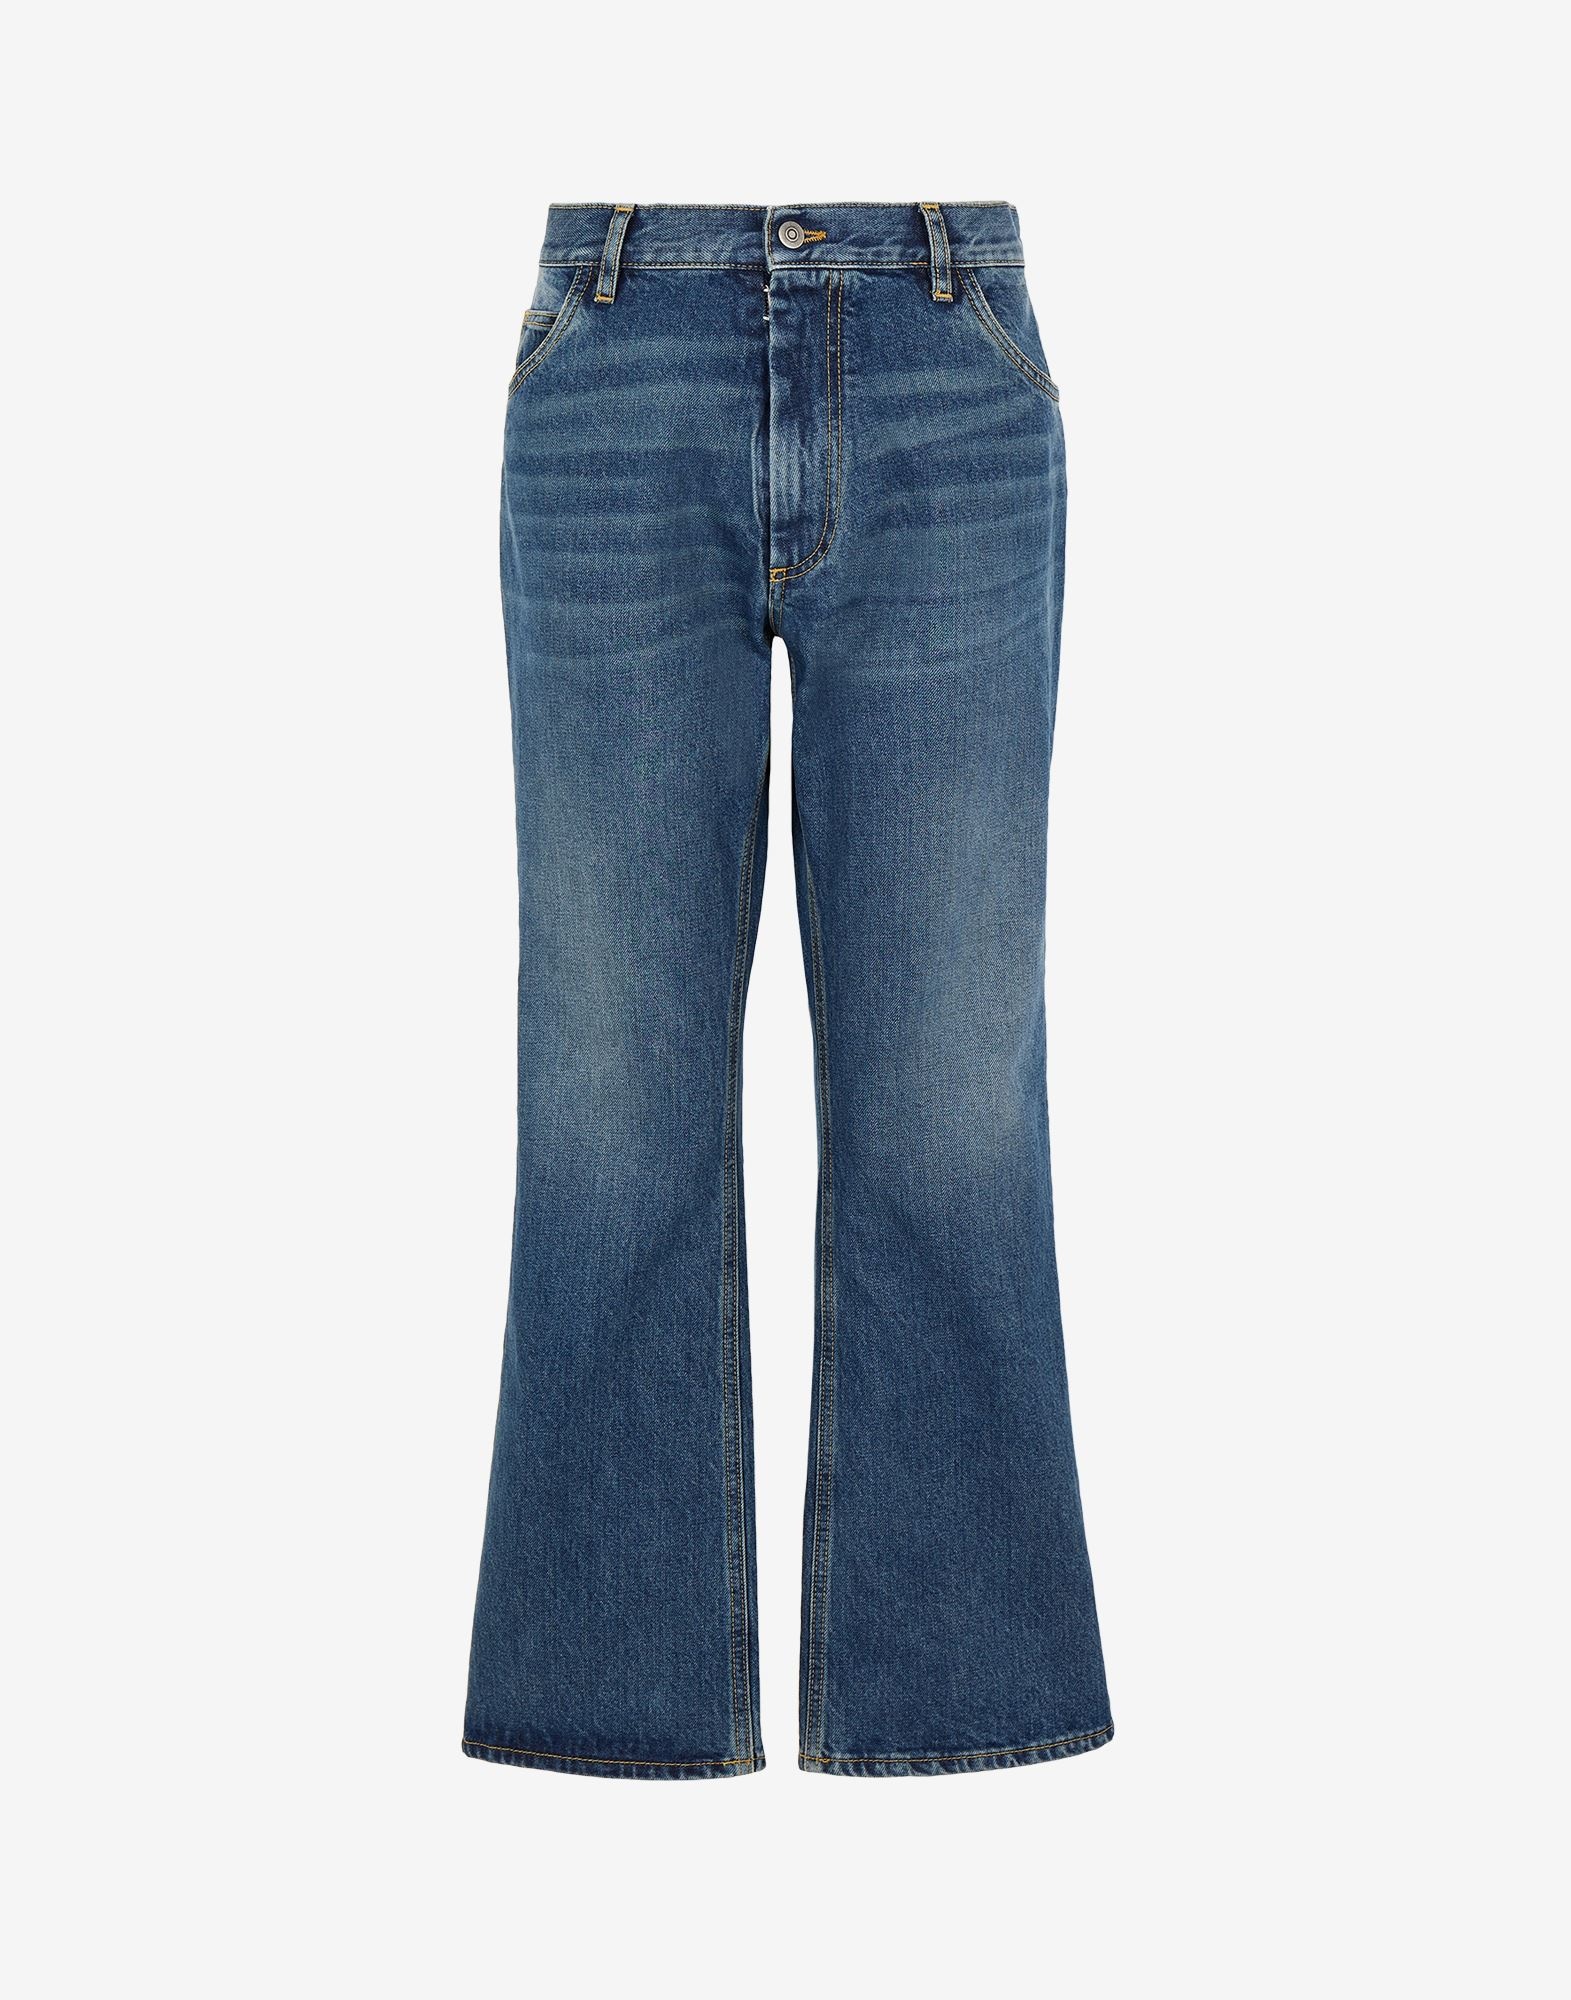 5 pocket jeans - 1